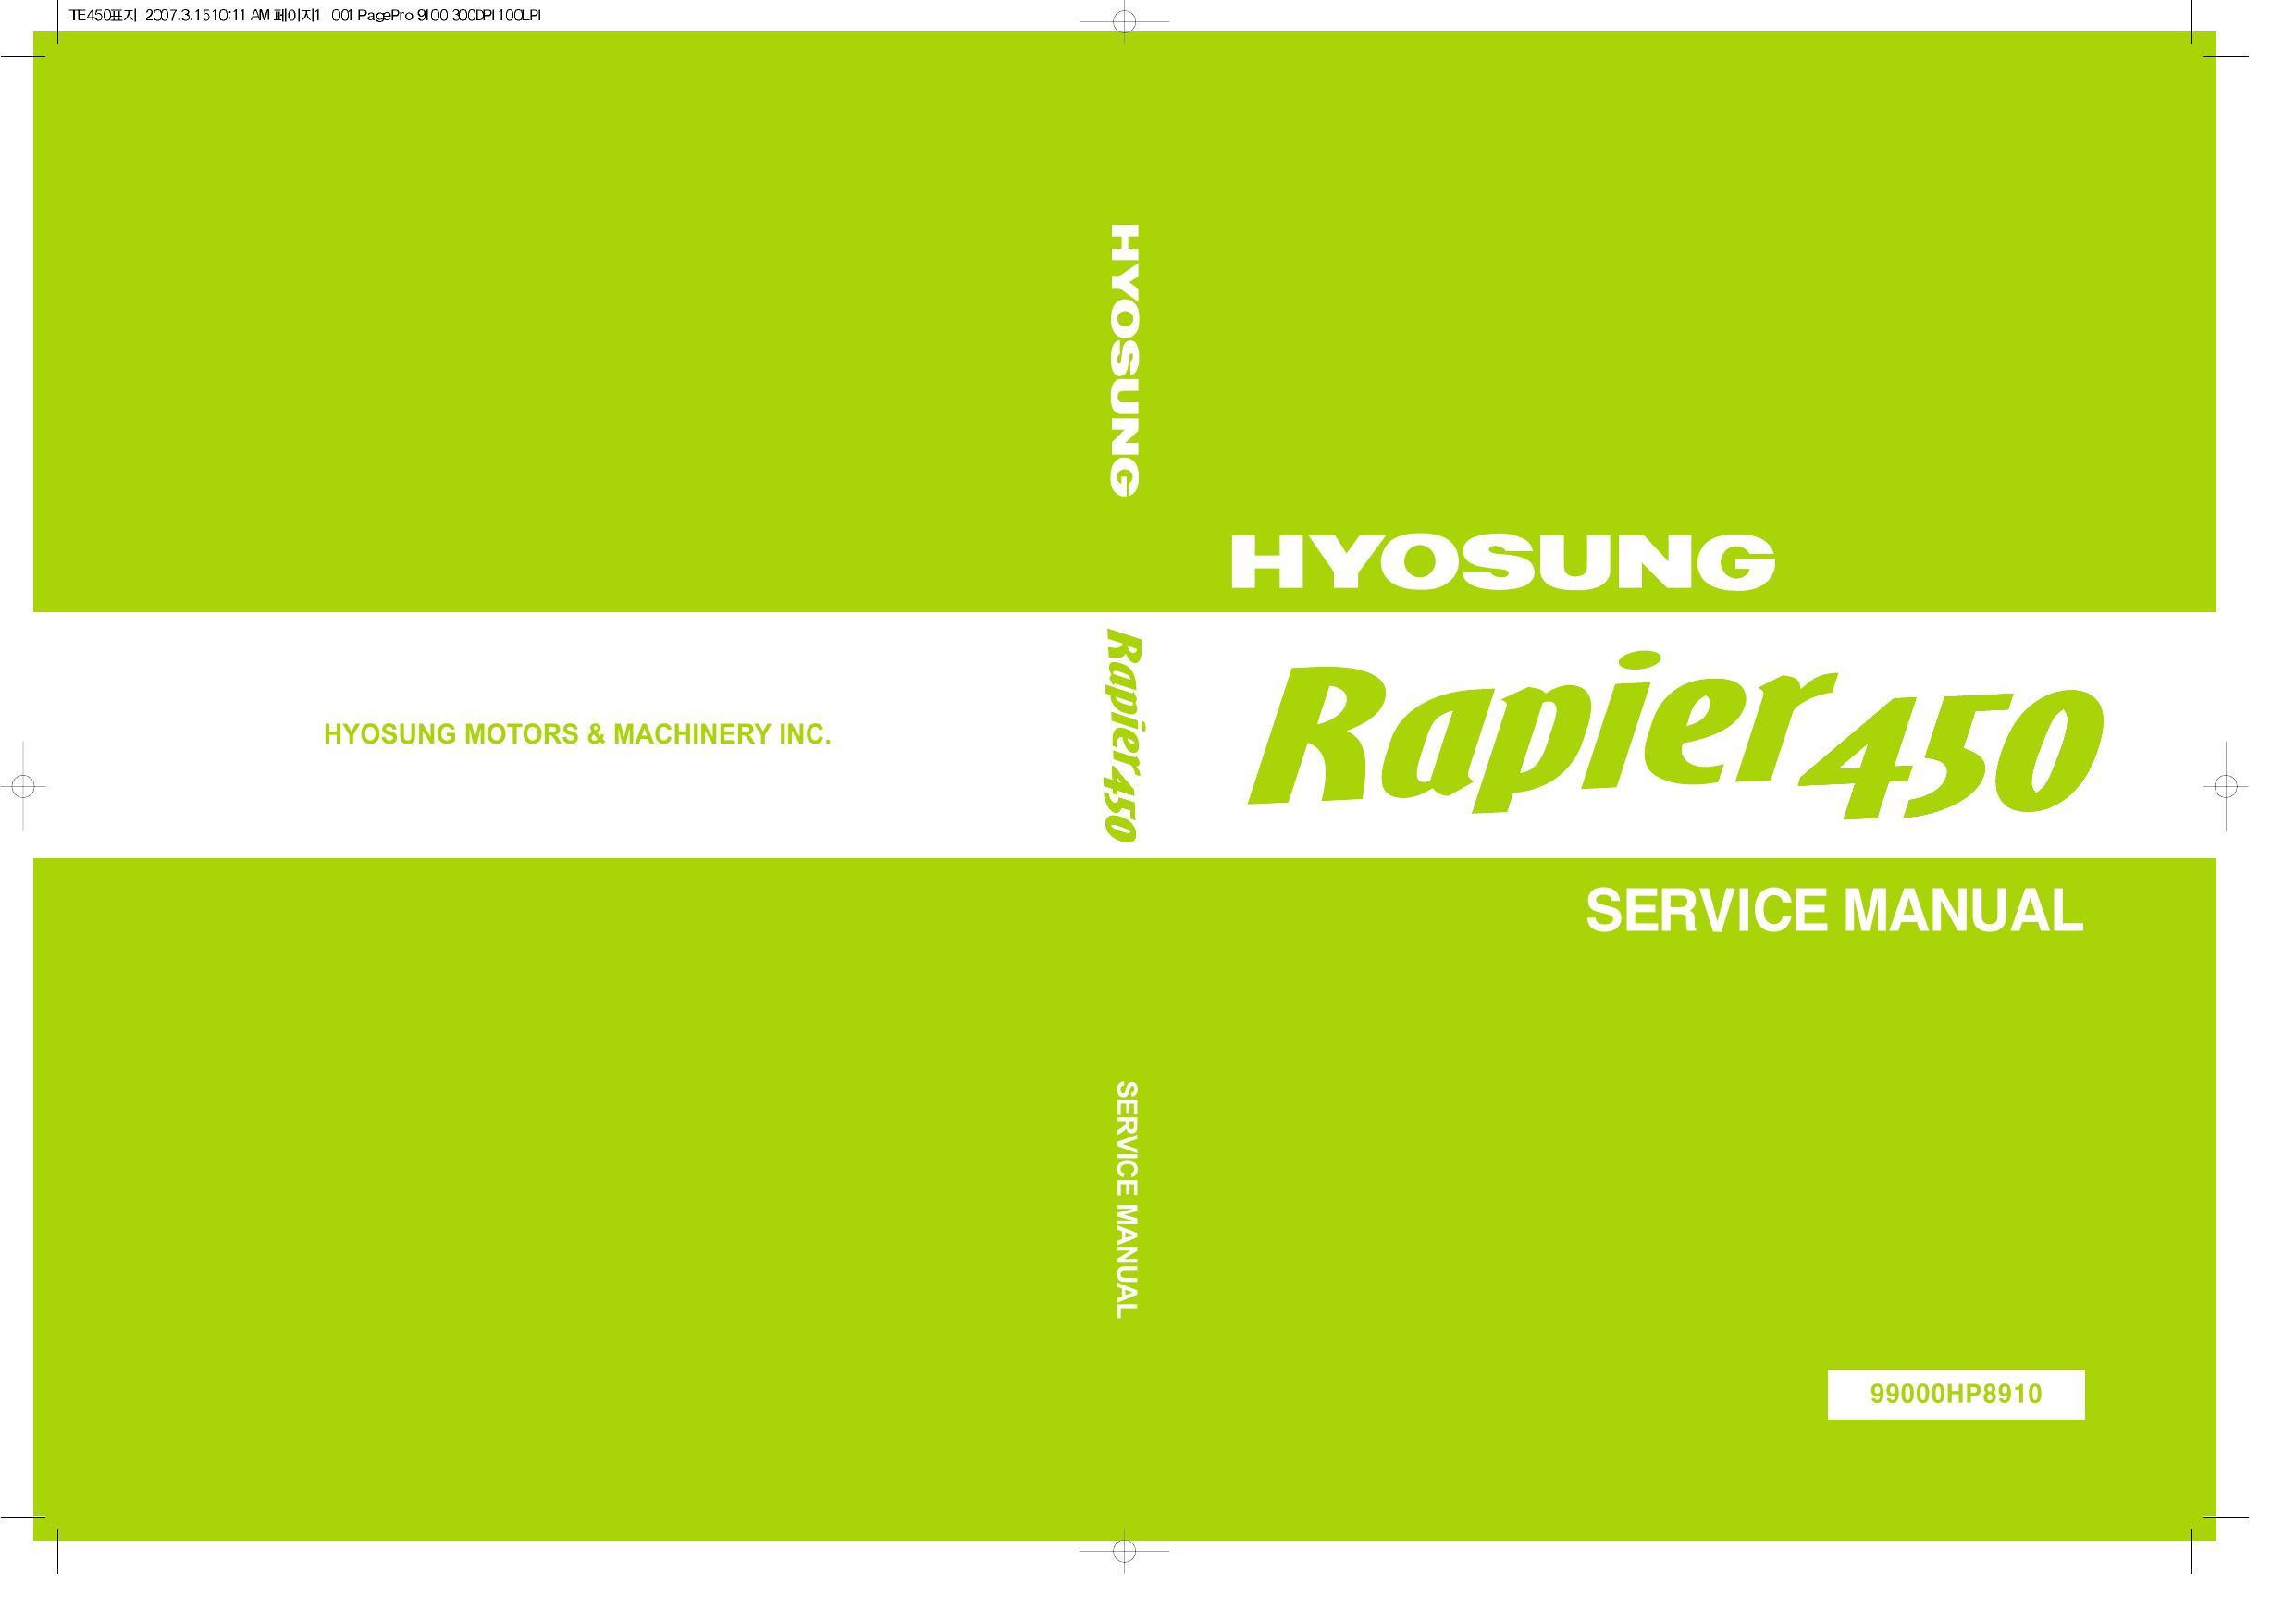 Hyosung Rapier 450 ATV repair manual Preview image 1